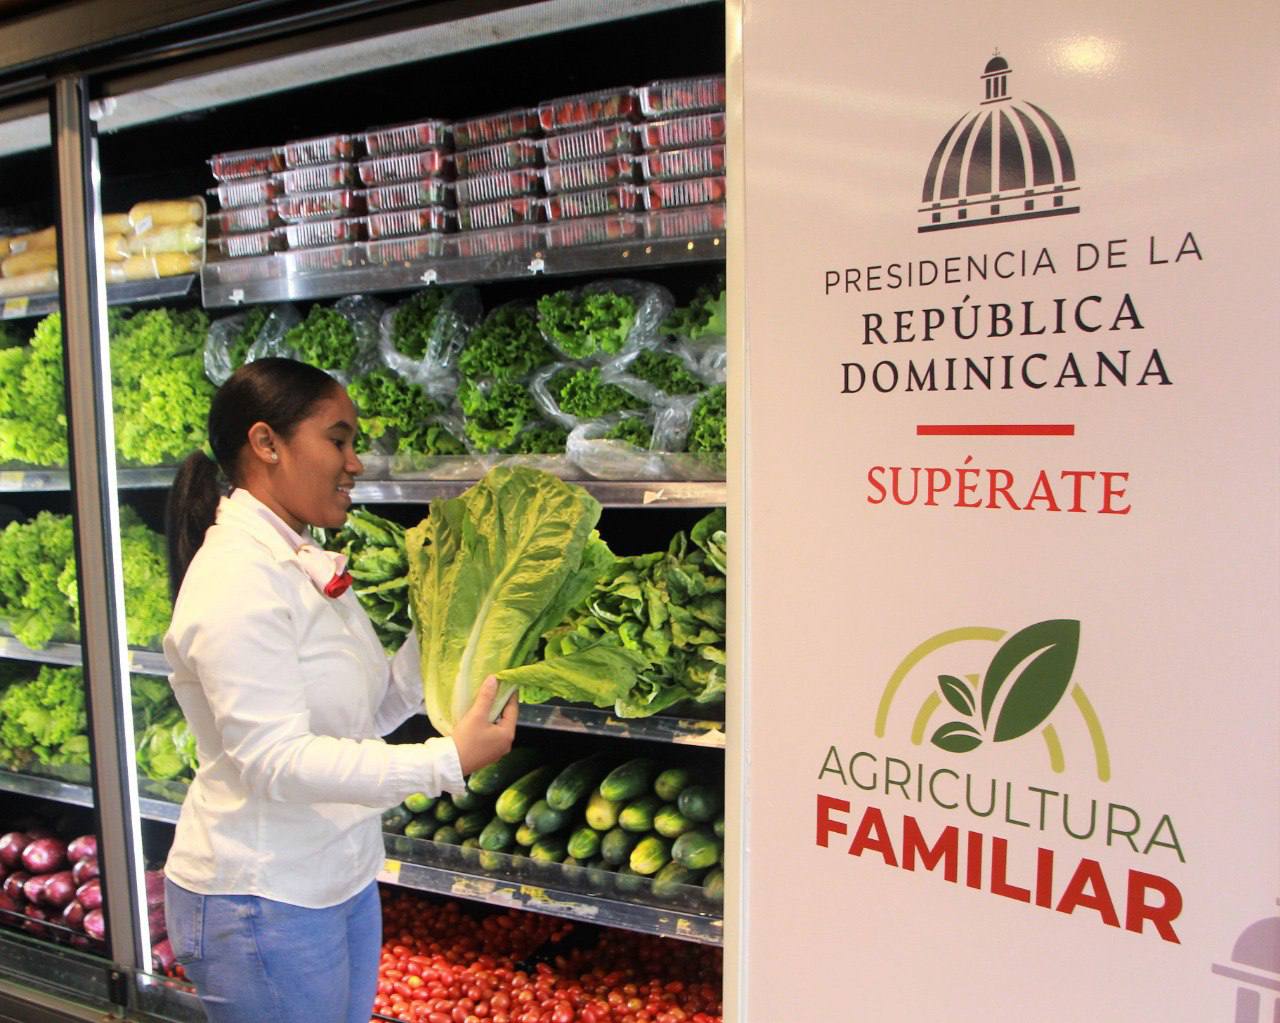 Bajo la dirección de Gloria Reyes, Supérate y su proyecto «Agricultura Familiar» trabajan constantemente para motivar el emprendimiento, el desarrollo y la salida de la pobreza de las familias.